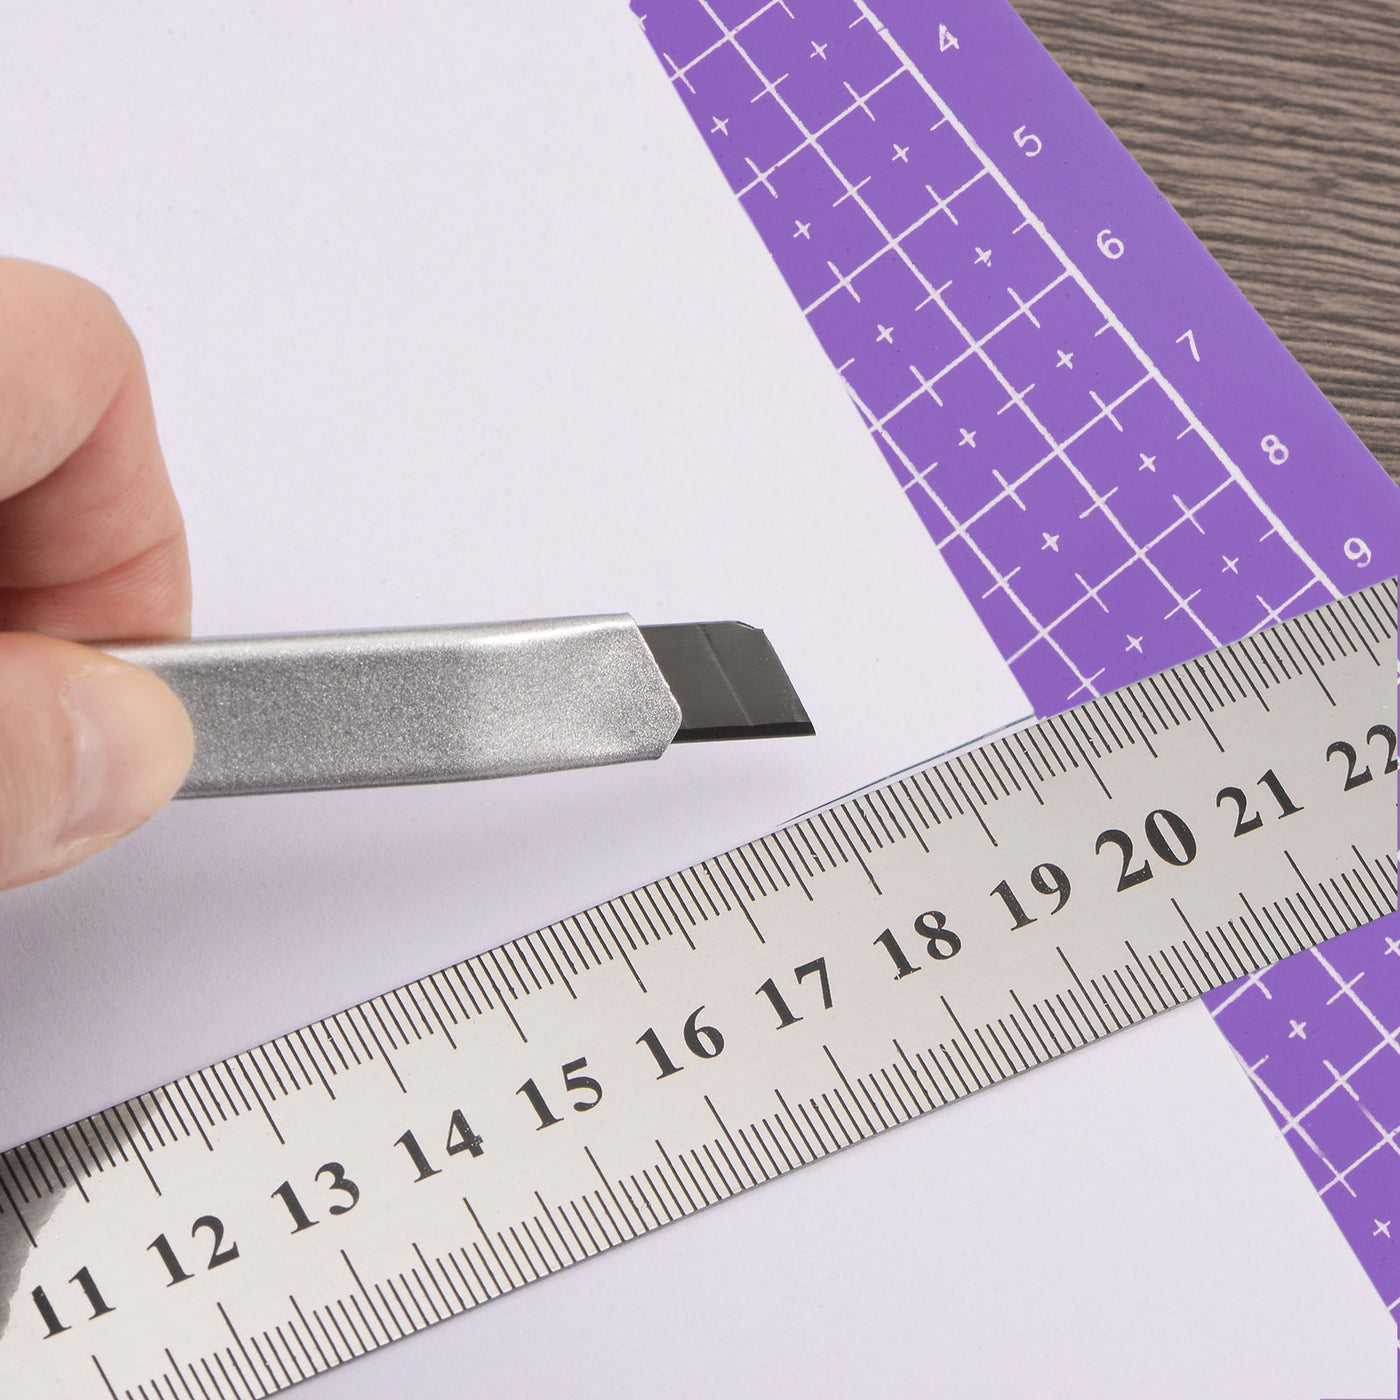 Harfington Cutting Mat & Metal Ruler Set A4 Purple Mat 30CM 0.8mm Thick Ruler